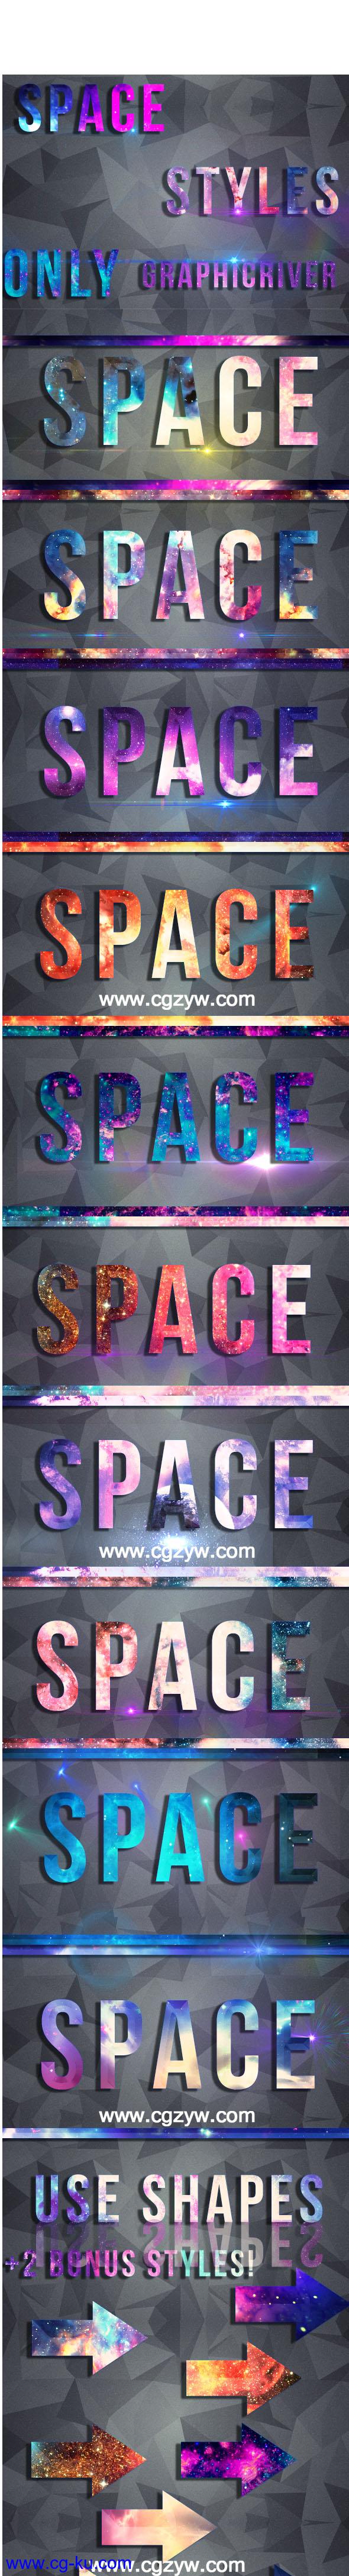 12个钻石文字+10款炫彩文字特效动作素材 Space Text StylesPSD图层样式的图片2